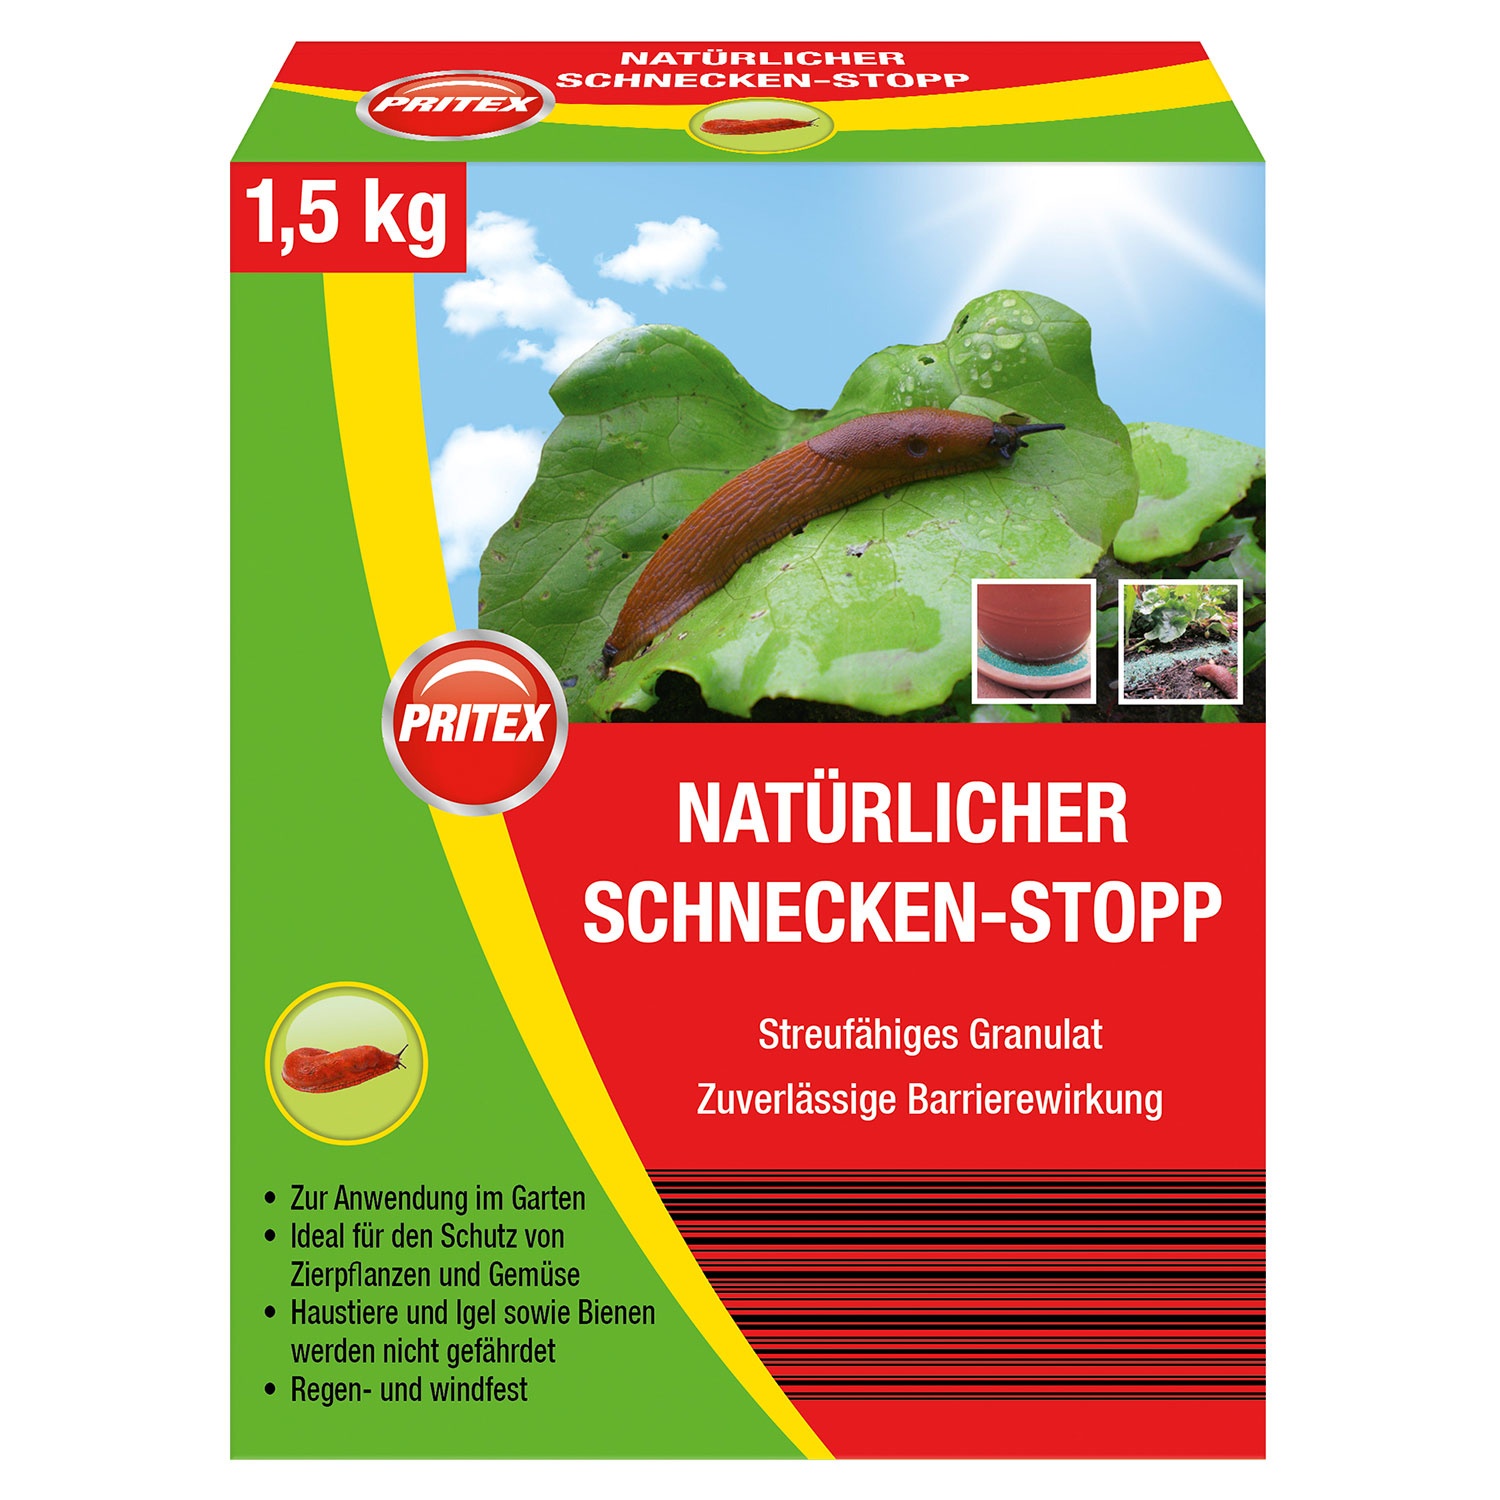 PRITEX Natürlicher Schnecken-Stopp 1,5 kg